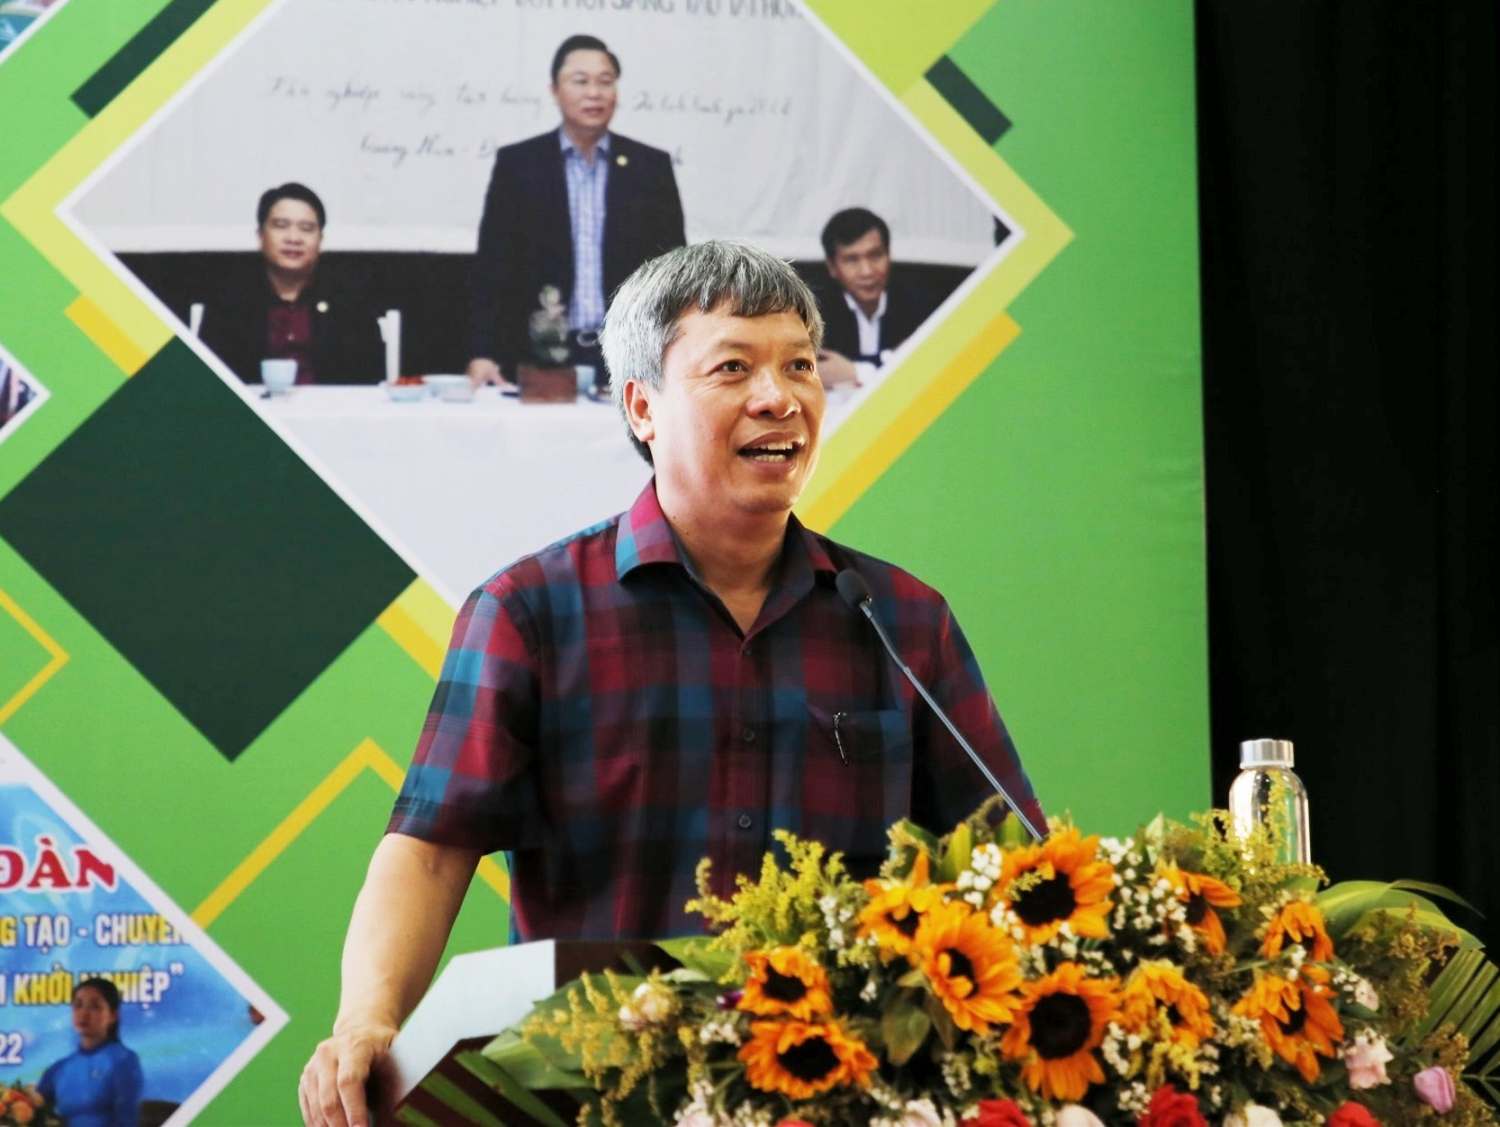 Phó Chủ tịch UBND tỉnh Hồ Quang Bửu phát biểu bế mạc Ngày hội khởi nghiệp tỉnh Quảng Nam lần thứ III   Techfest Quang Nam 2022